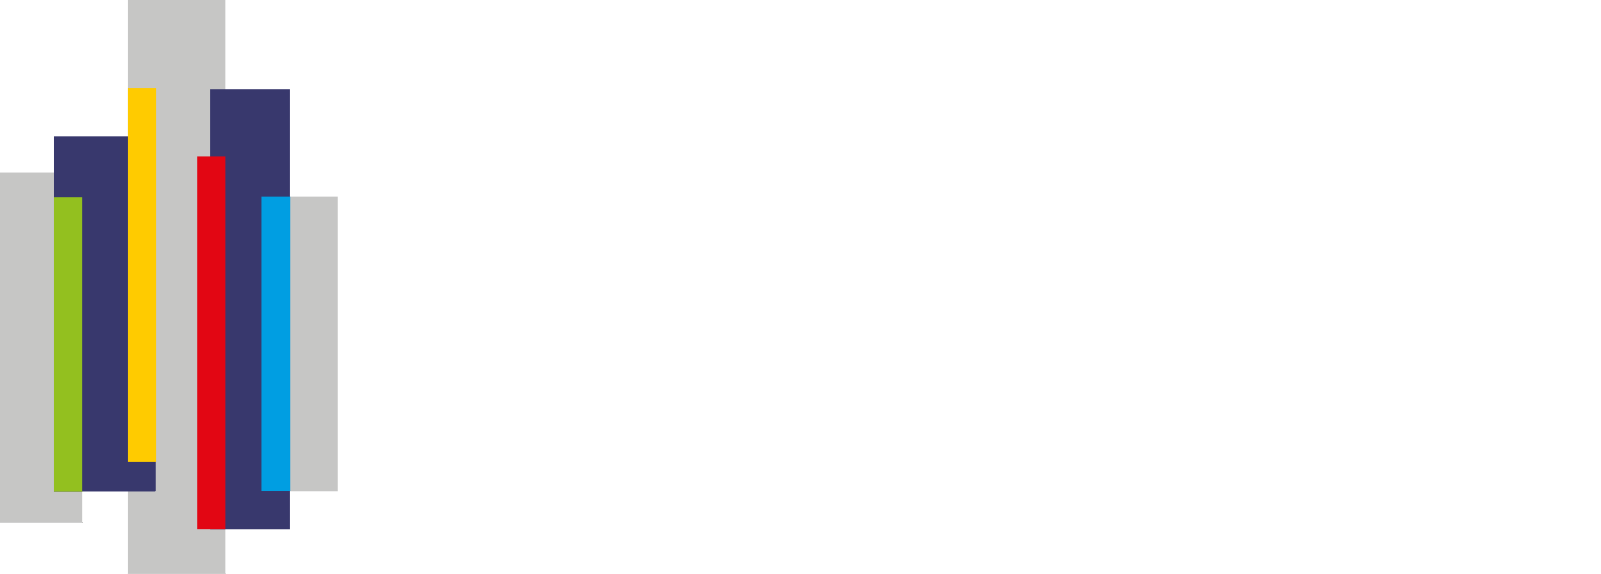 Energy Vault logo grand pour les fonds sombres (PNG transparent)